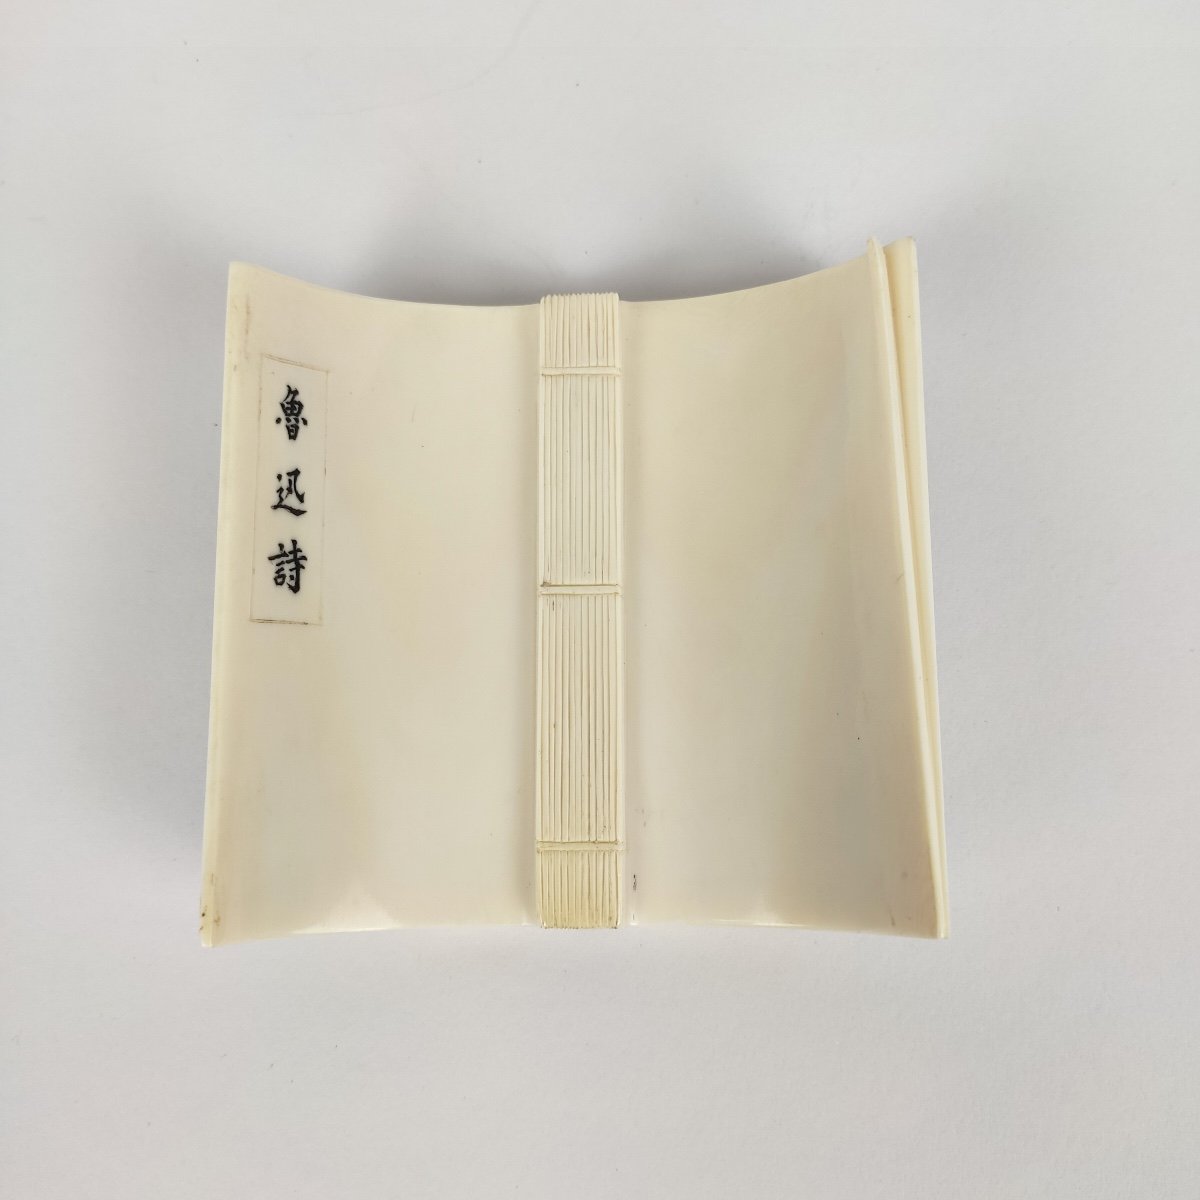 Lu Xun : Interessant Livre Chinois Sculpté. Début XXe Siècle. Paysage Et Poème. -photo-3